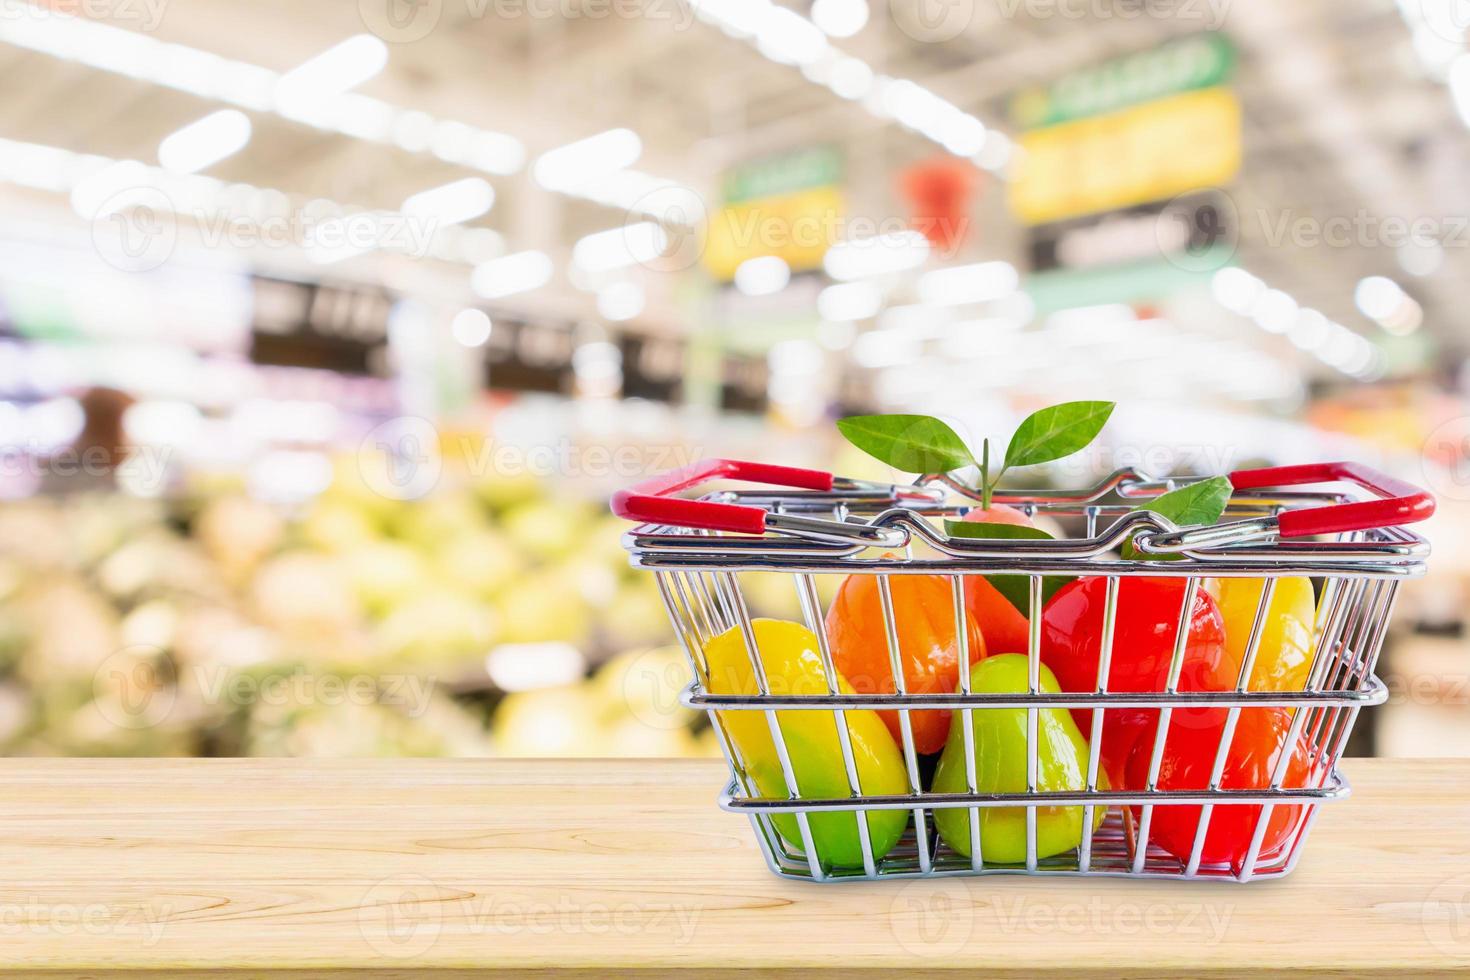 cesta de la compra con frutas en la mesa de madera sobre el fondo borroso del supermercado de la tienda de comestibles foto